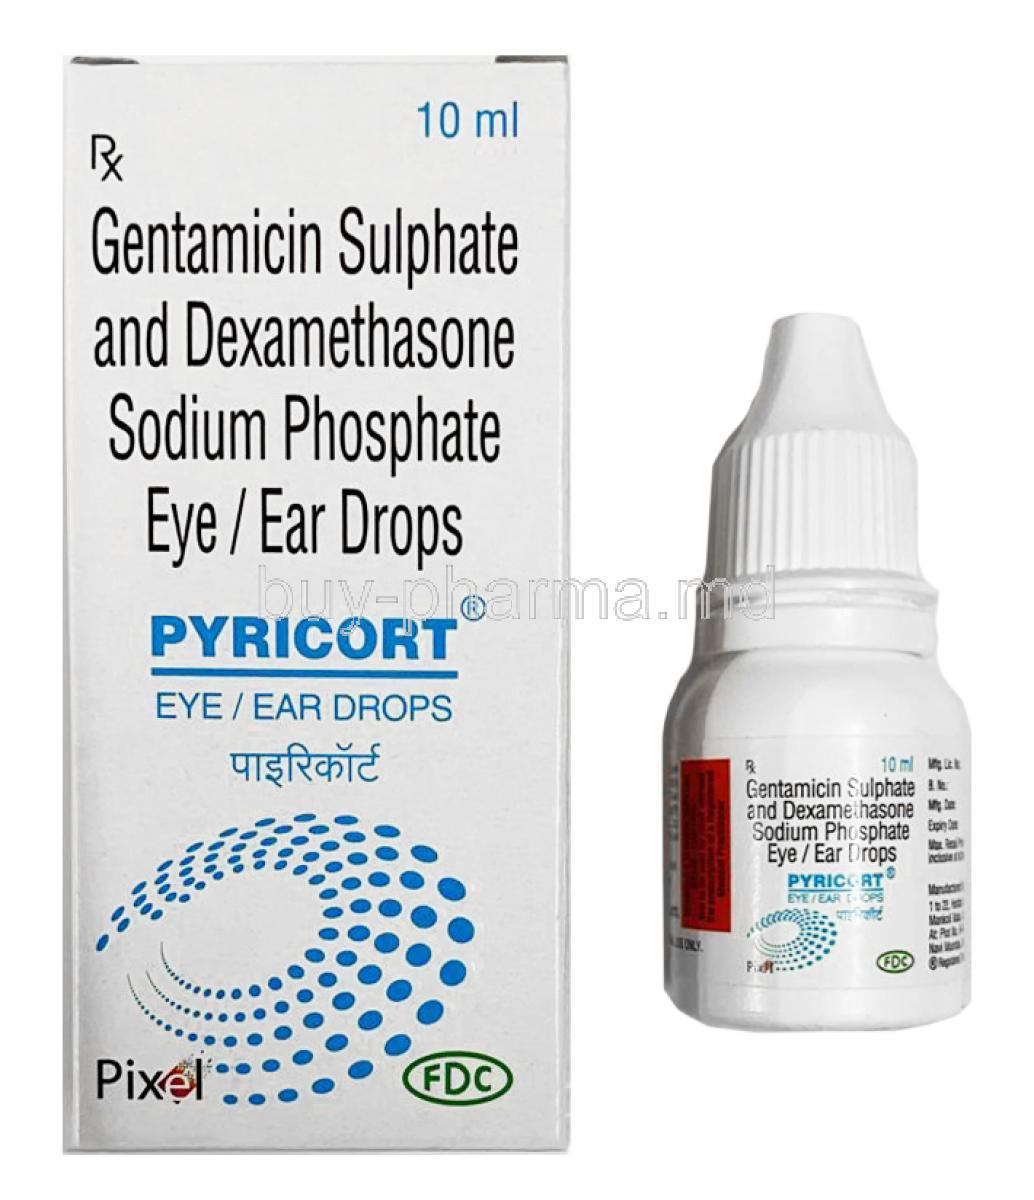 Pyricort EyeEar Drops, Gentamicin and Dexamethasone 10ml box and bottle